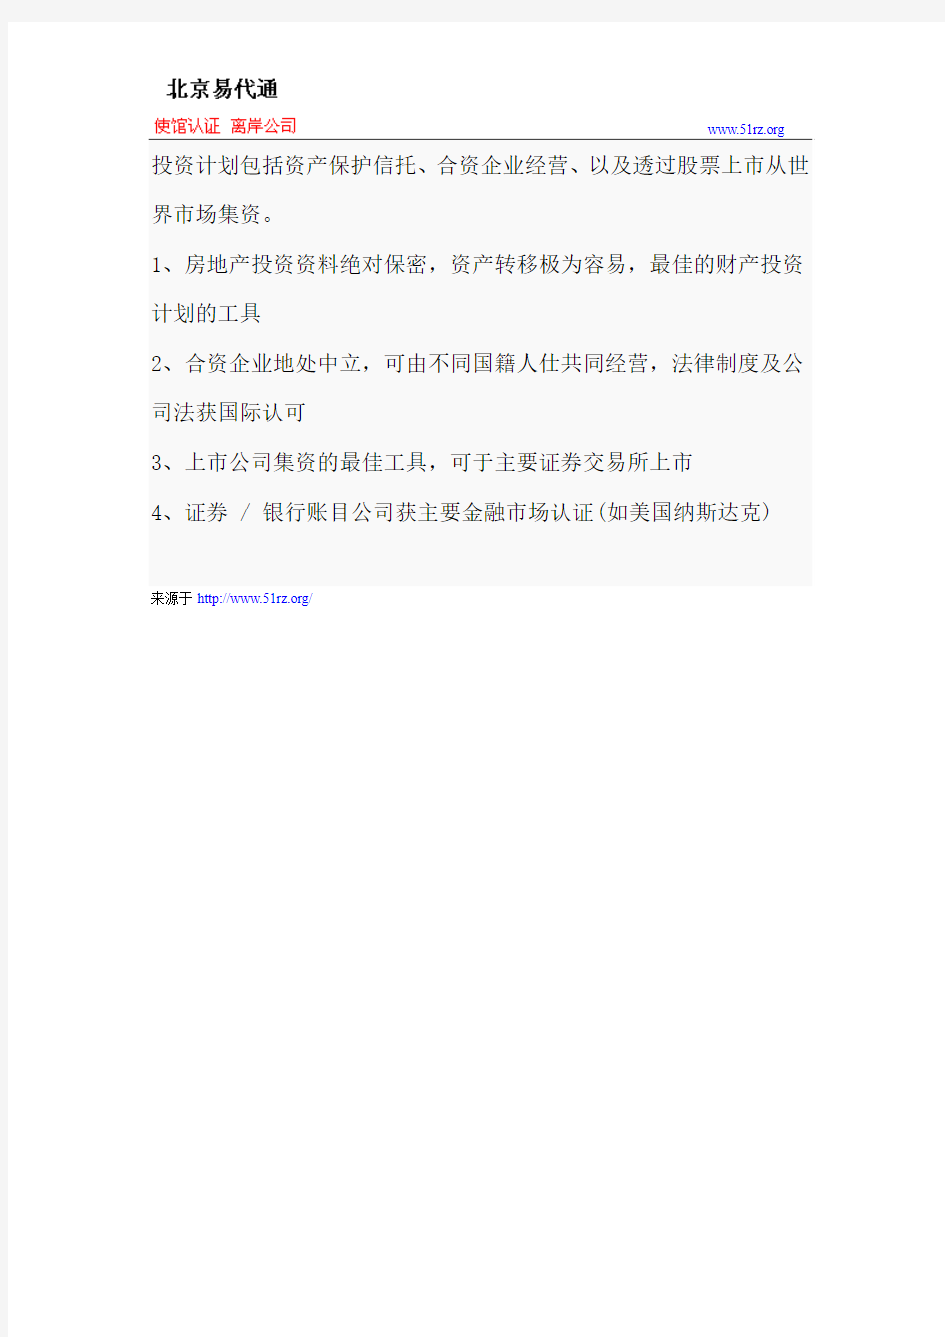 中国国籍个人注册开曼公司的优势以及办理流程